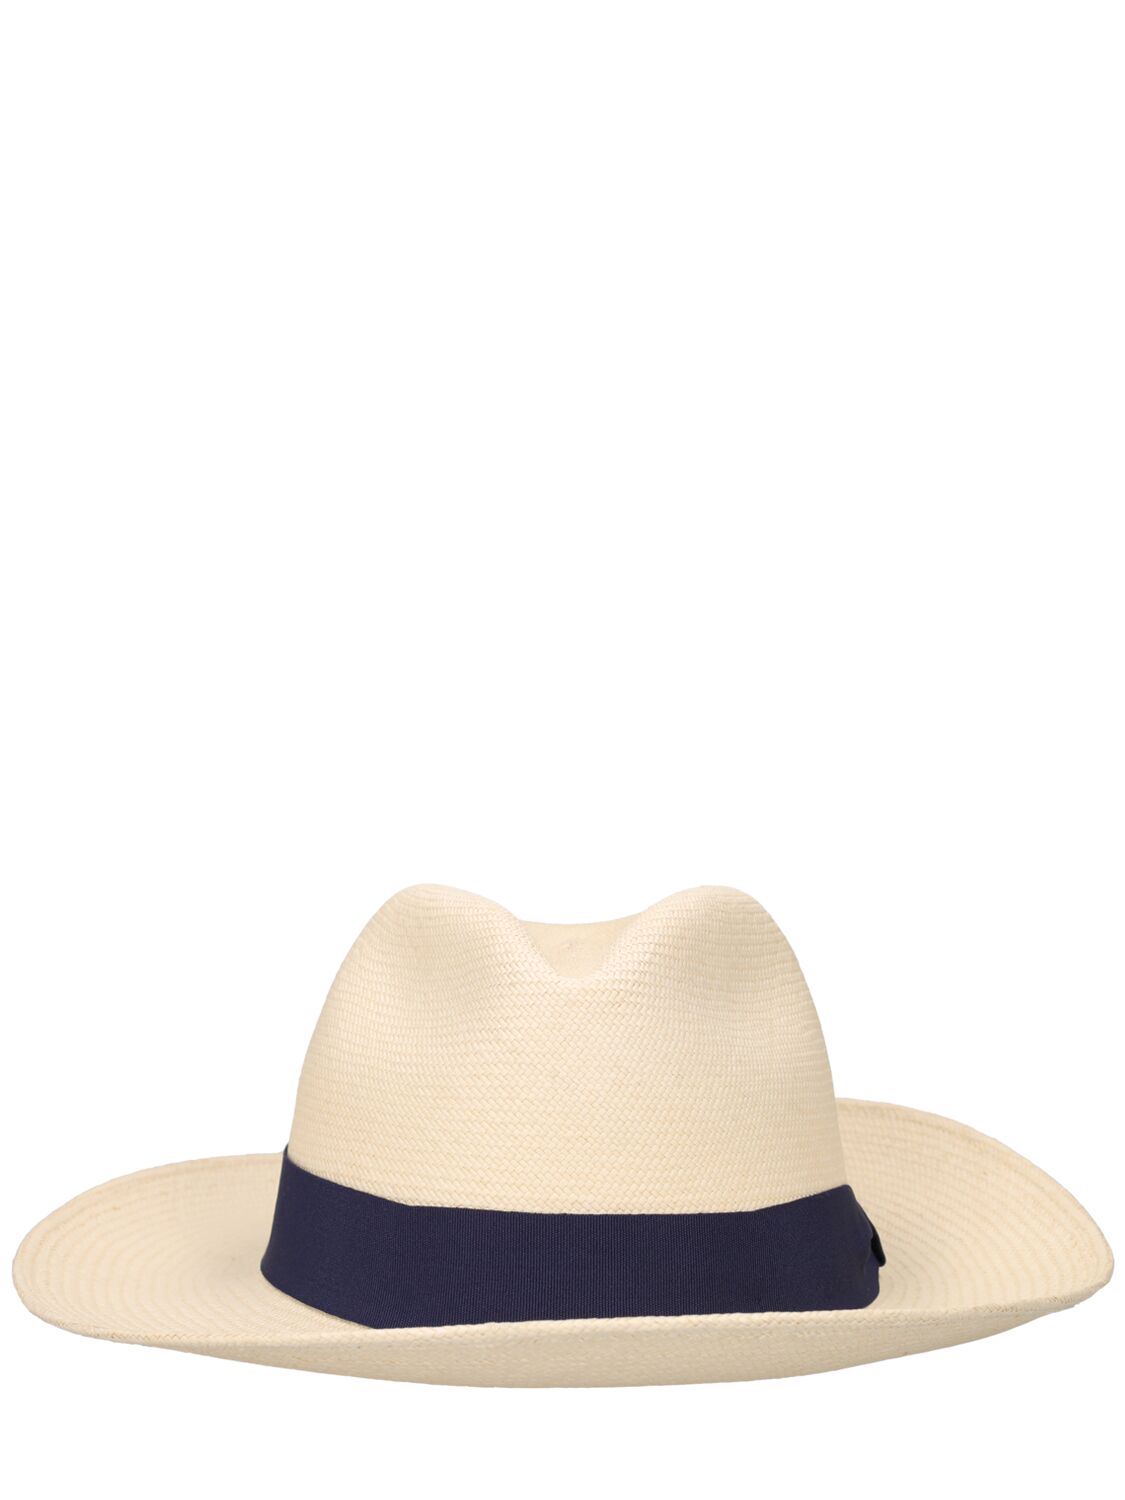 Frescobol Carioca | Men Ecuadorian Panama Straw Hat White/navy 61